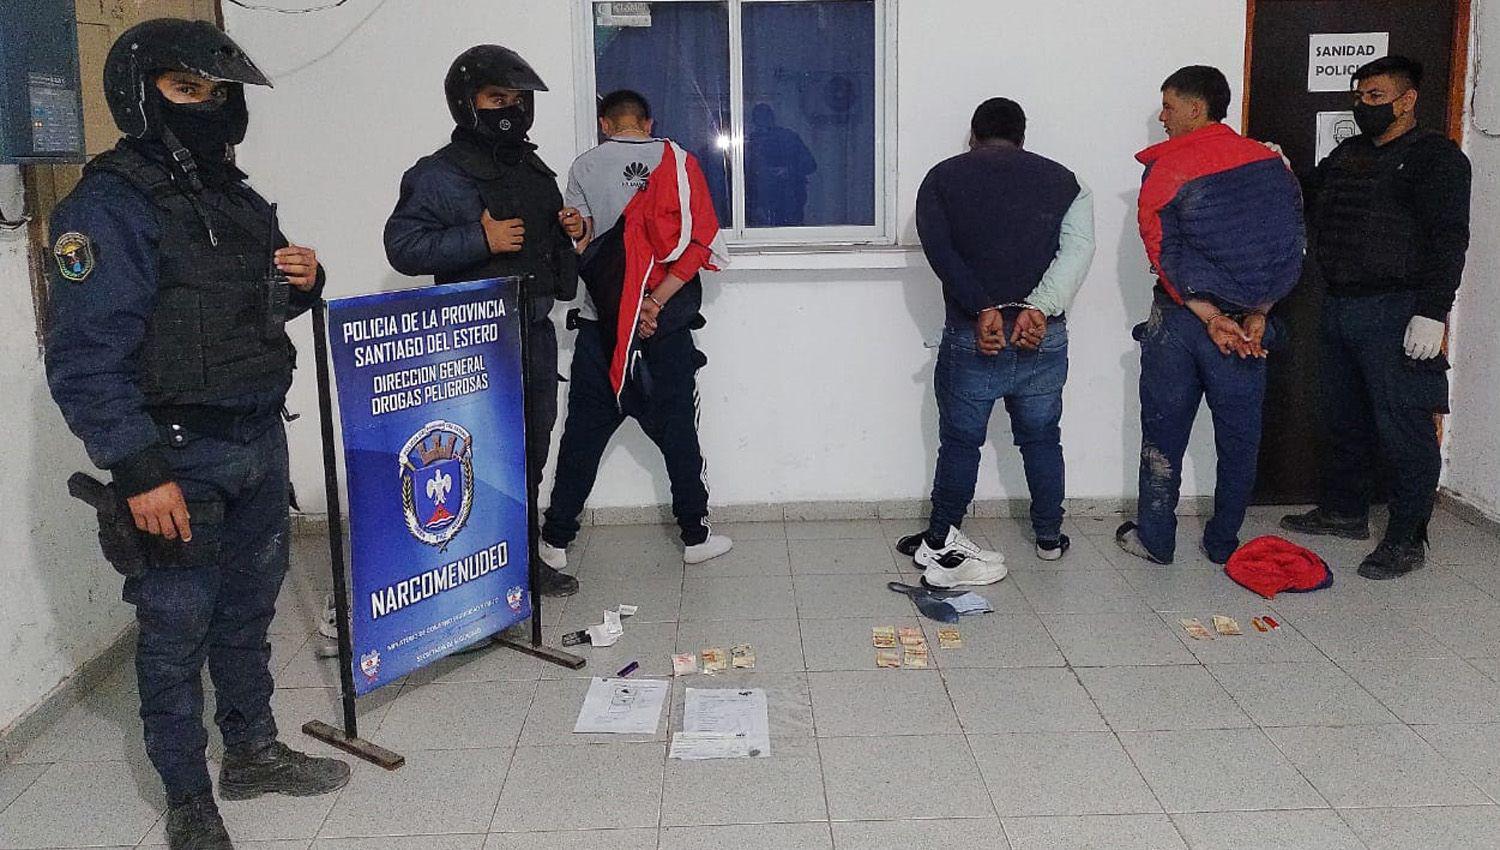 ViacuteDEOS- Fueron sorprendidos con drogas alcohol y agredieron a la policiacutea